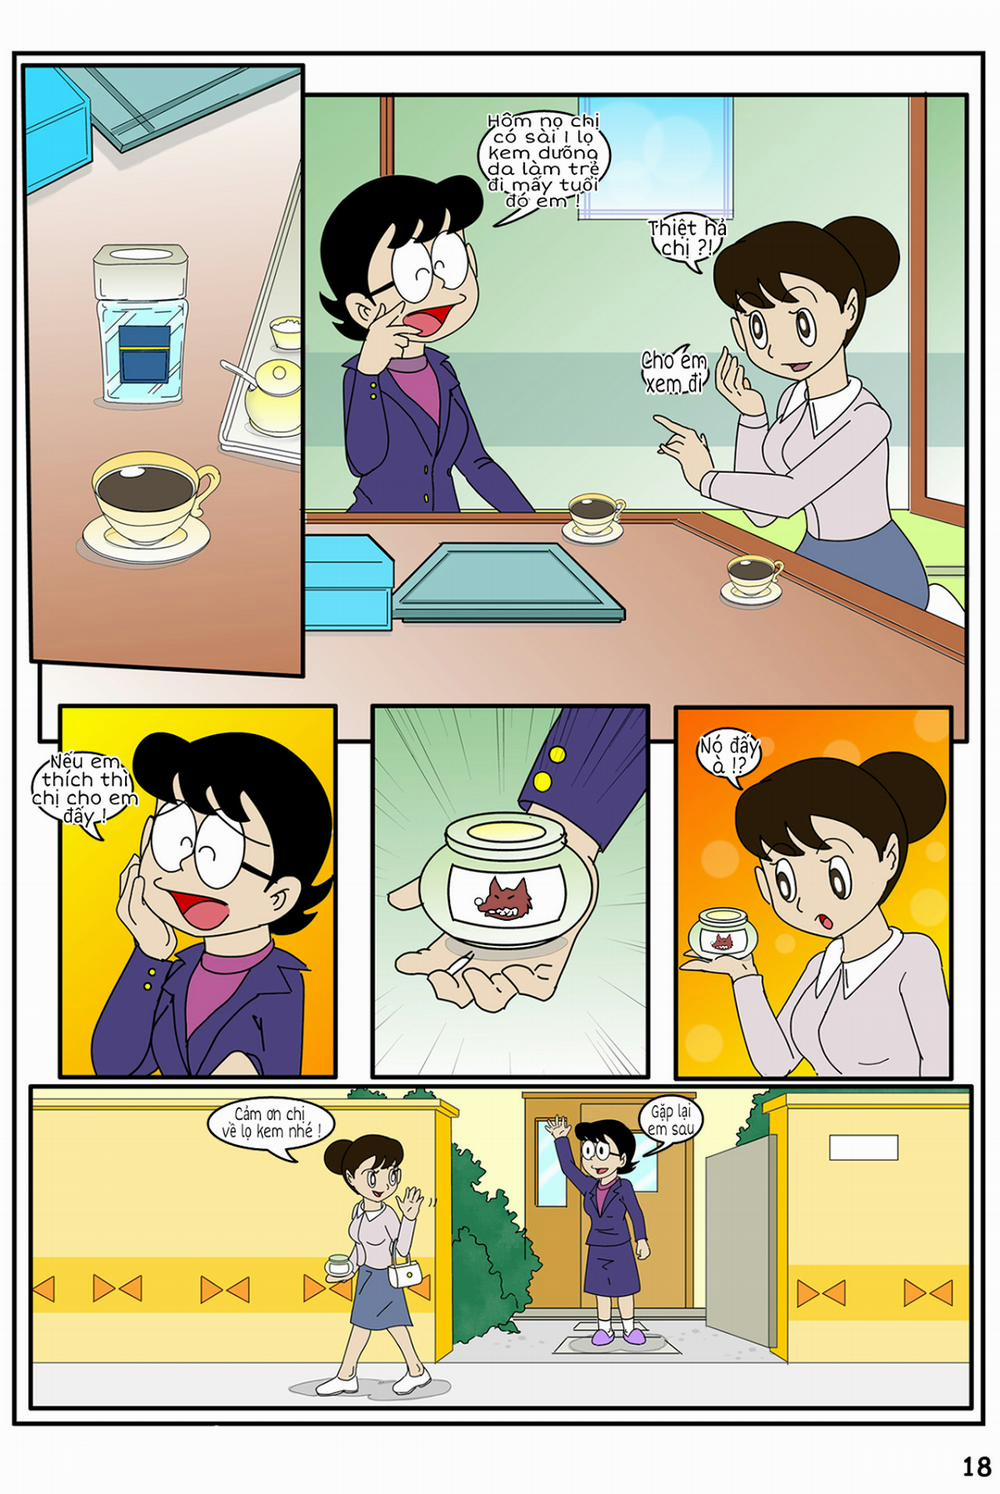 Tuyển Tập Doraemon Doujinshi 18+ Chương 20 Kem ch s i 2 Trang 2